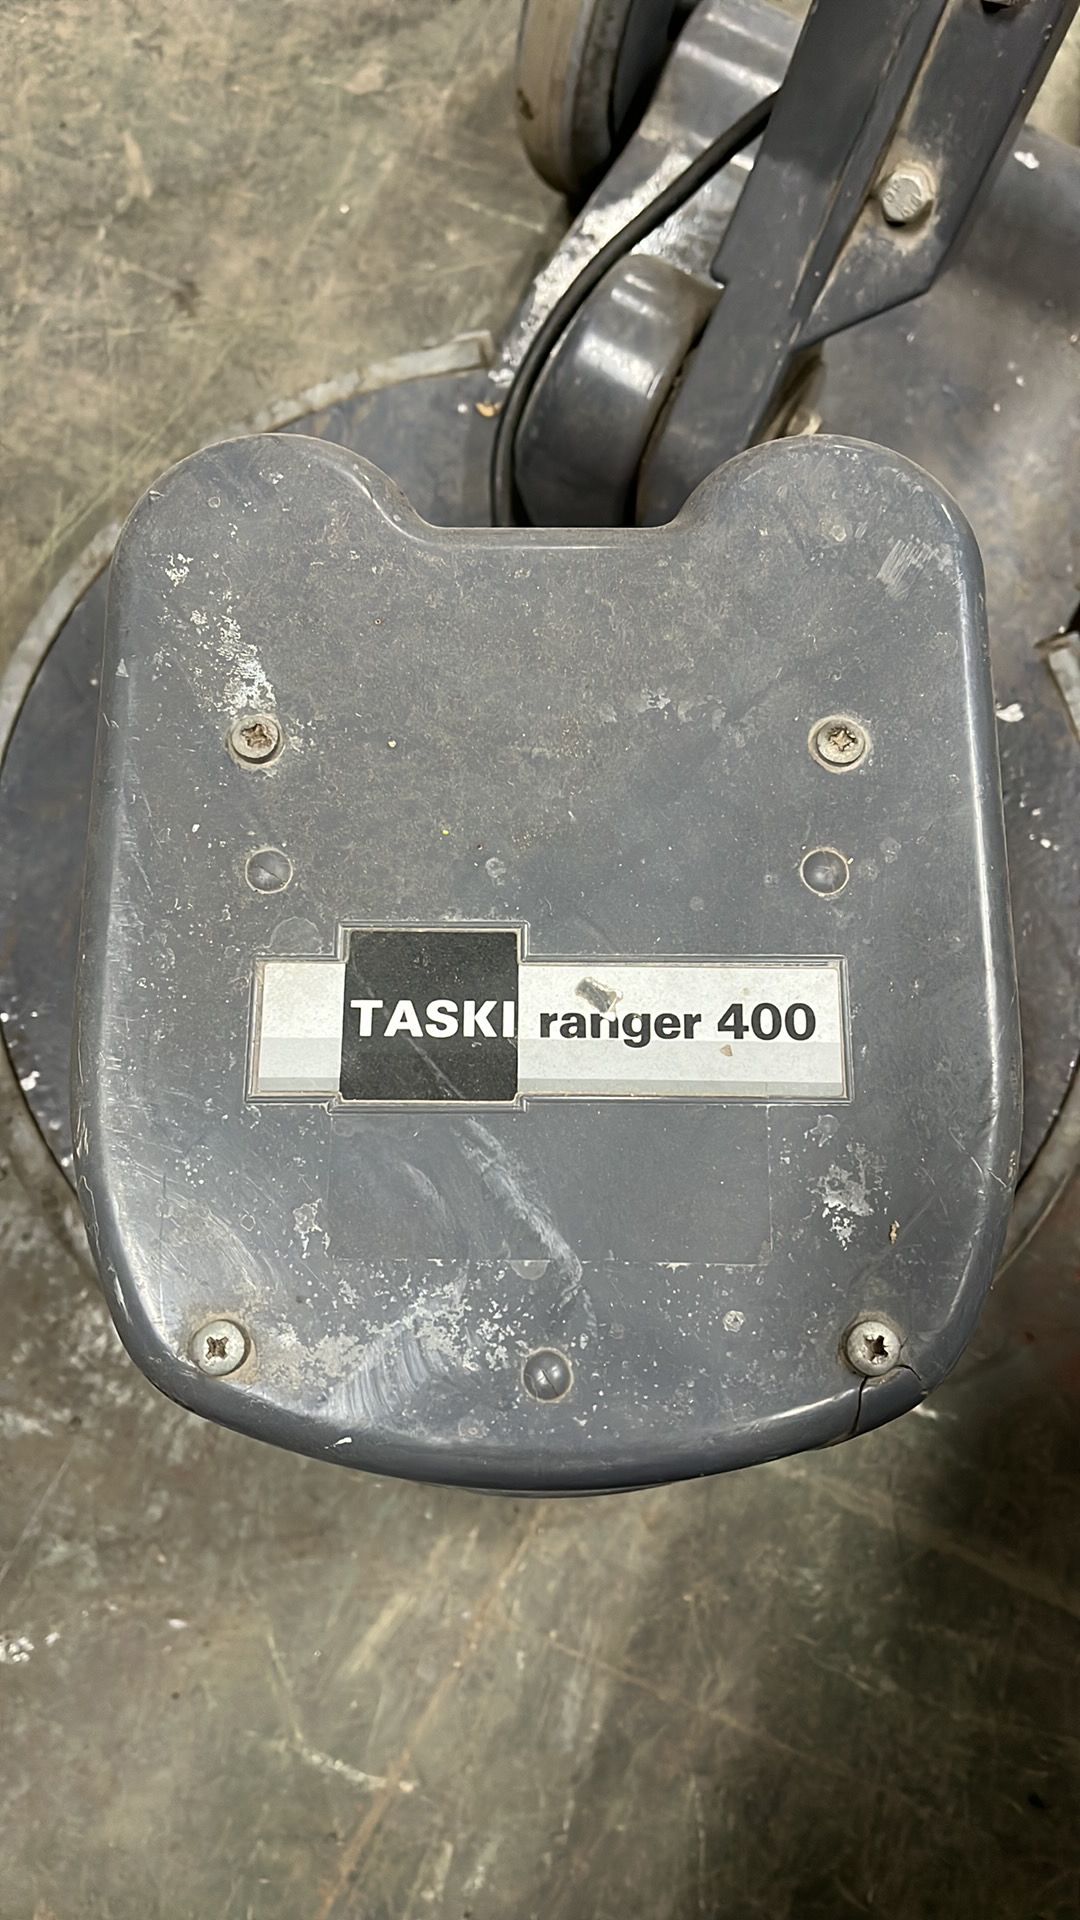 Taski Ranger 400 Hi Speed Floor scrubber - Image 4 of 4